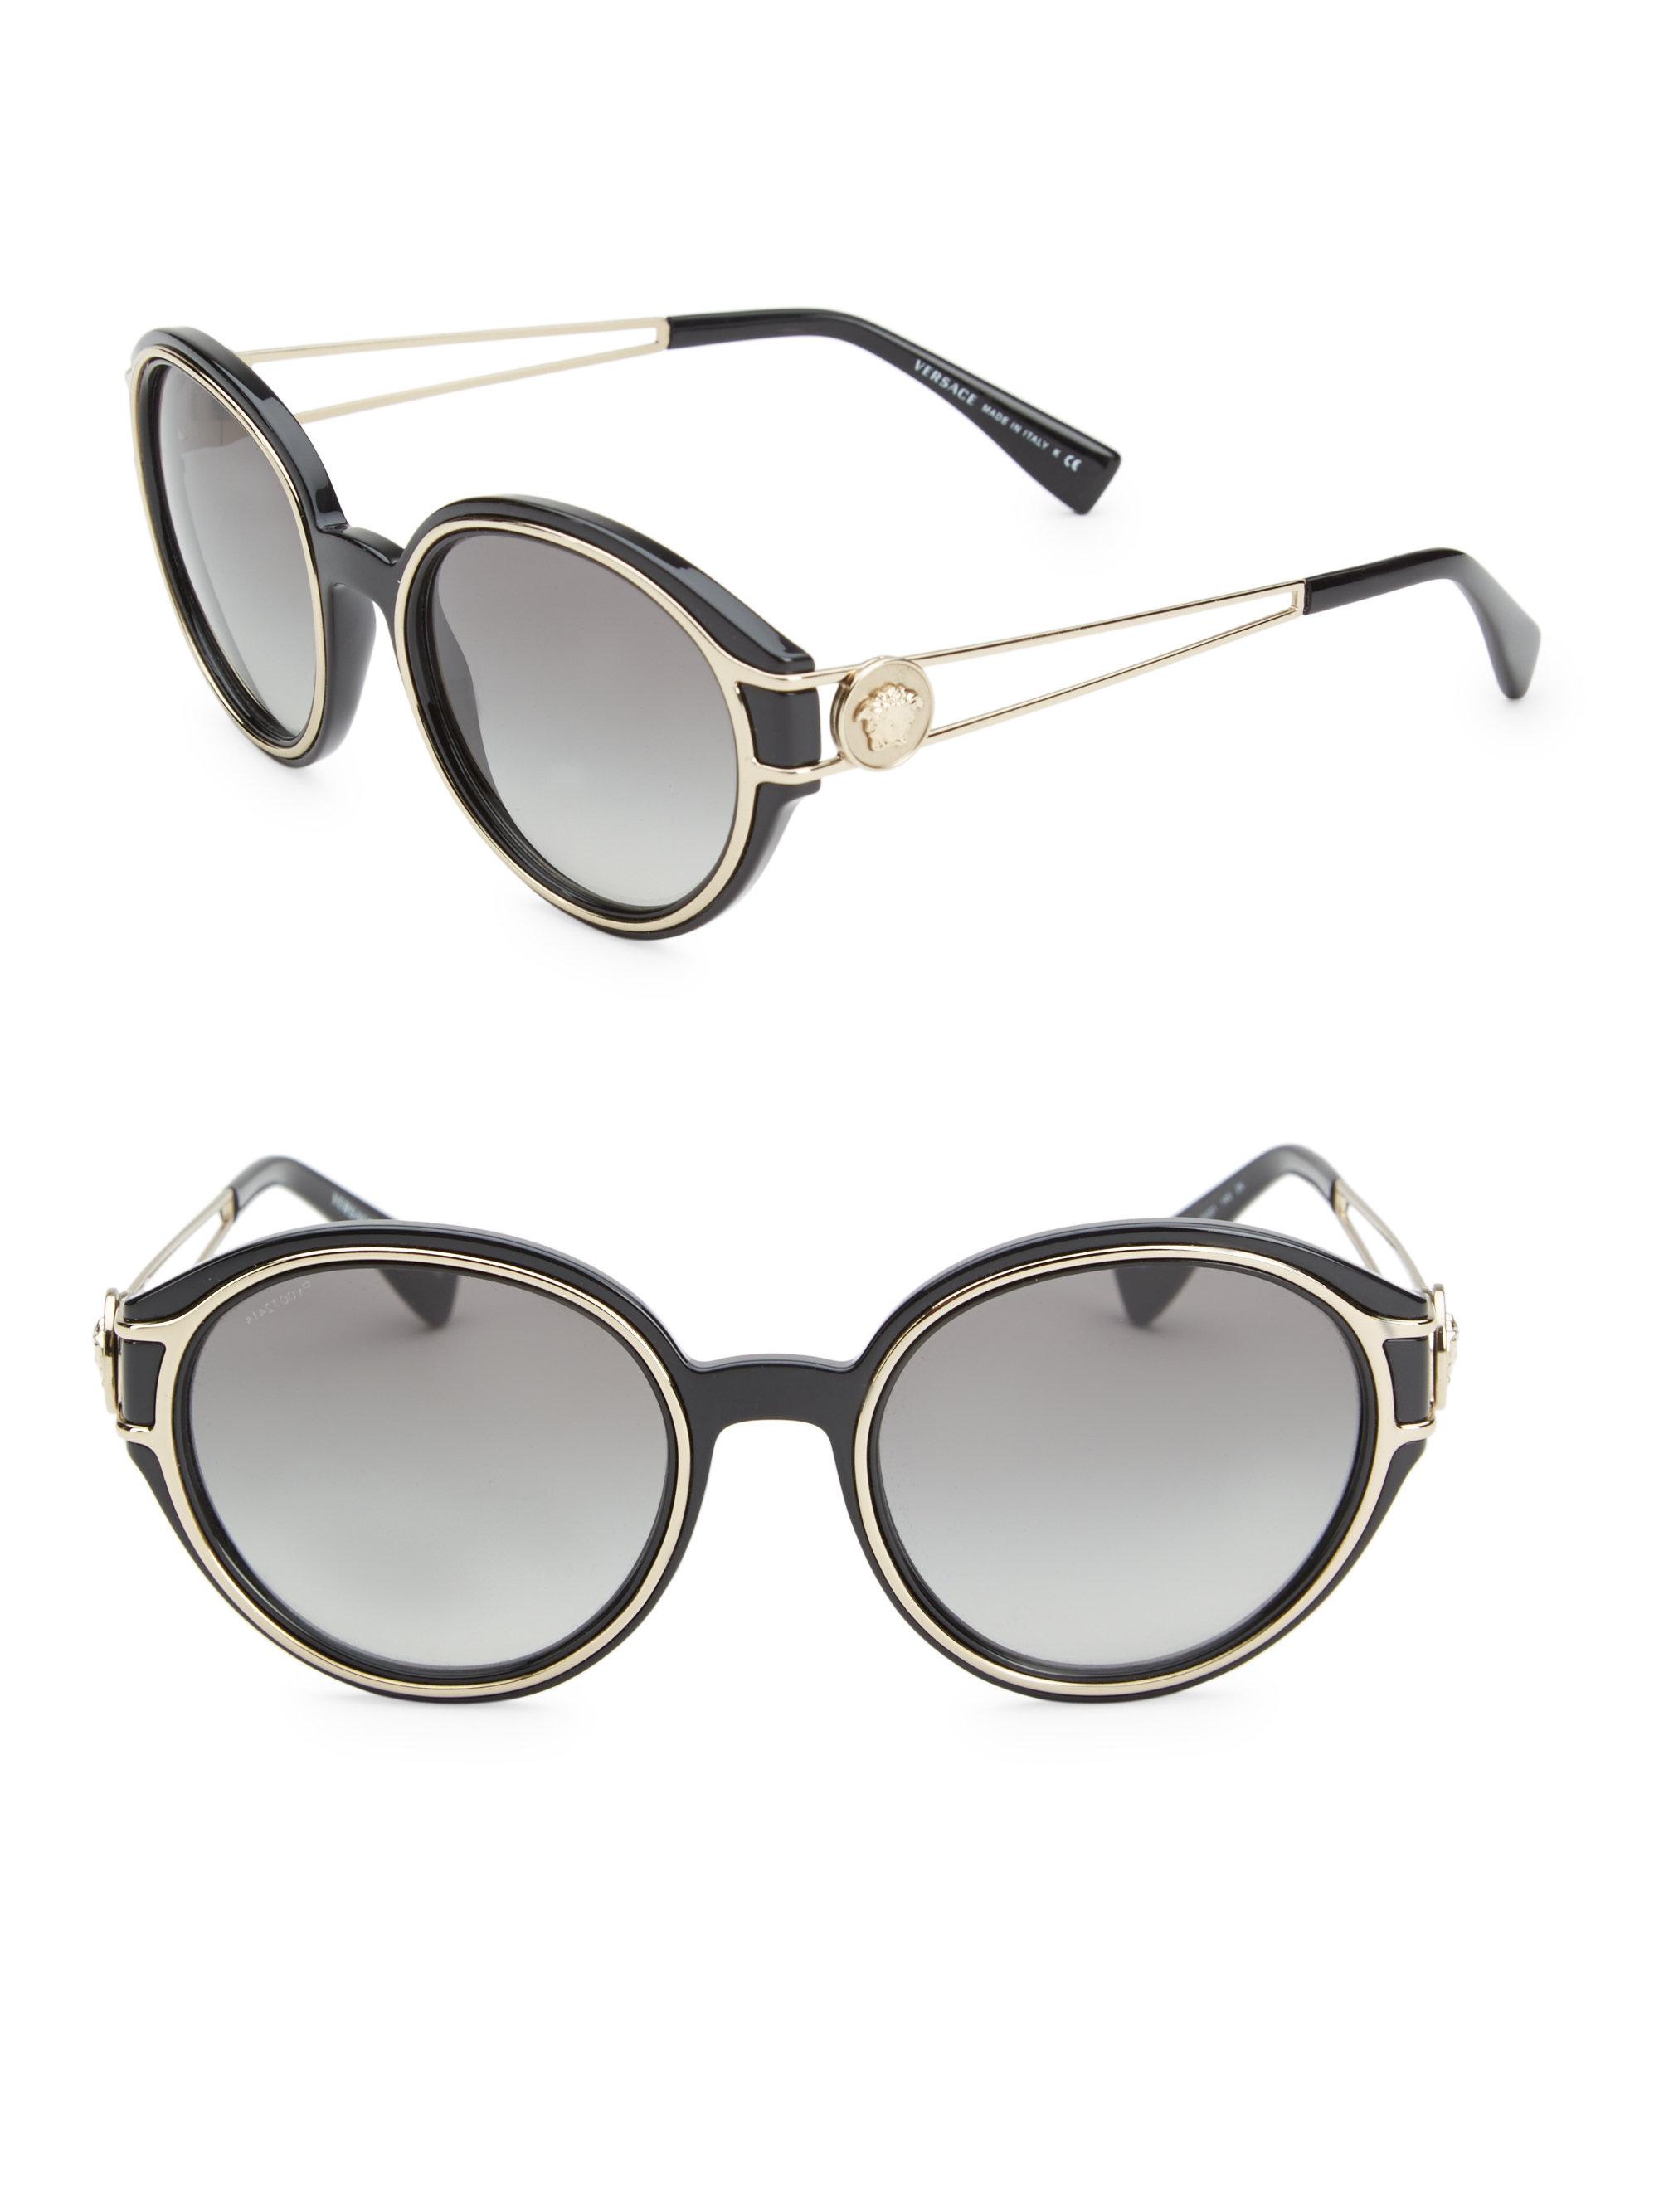 versace 53mm round sunglasses Cheaper 